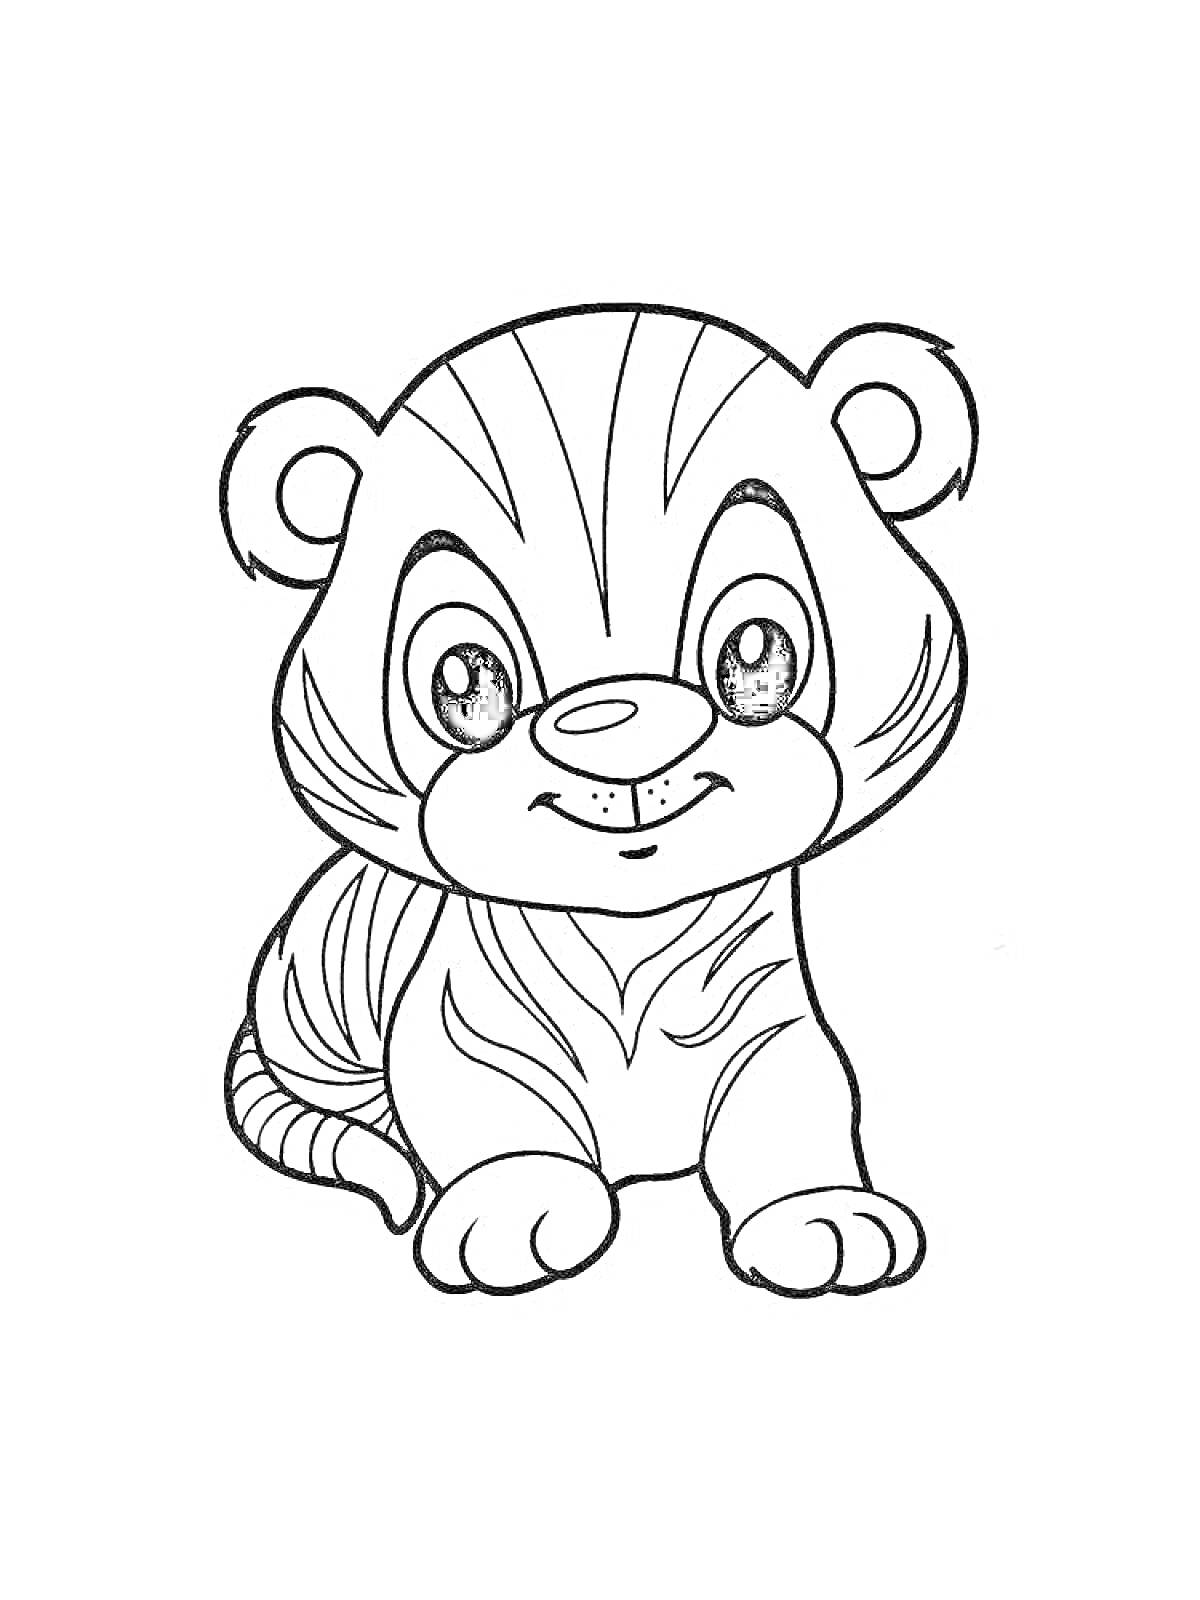 РаскраскаРаскраска: милый детский тигрёнок